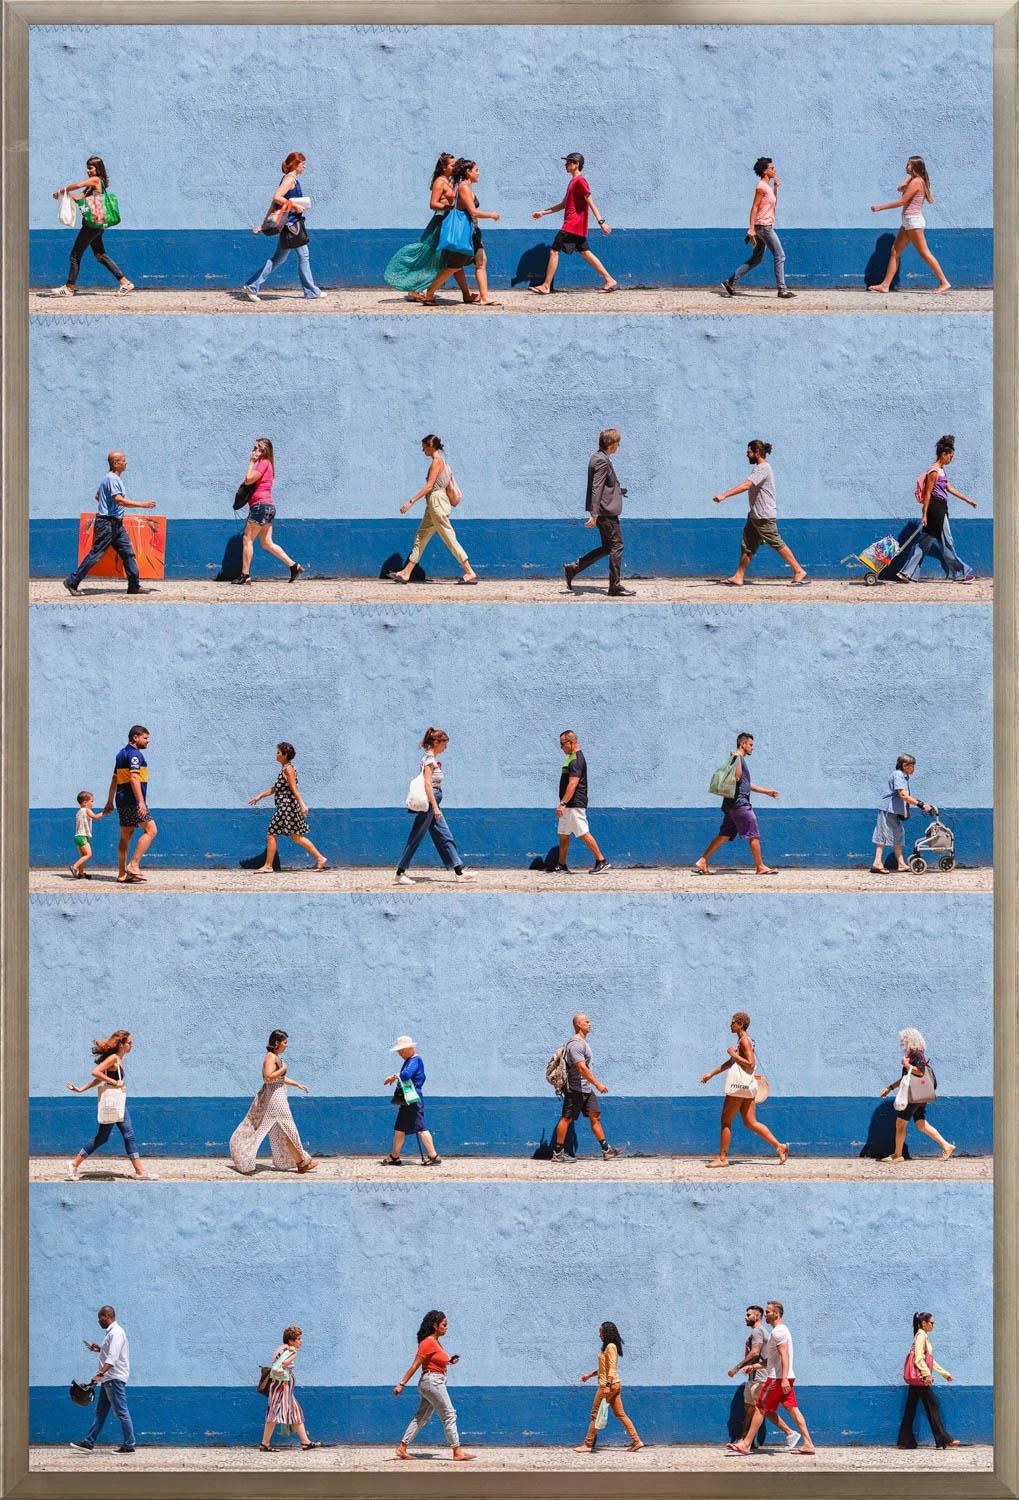 "Copacabana, Rio de Janeiro" est une photographie encadrée sur papier de Xan Padron, représentant une compilation de personnages marchant sur un fond architectural bleu rayé. La technique caractéristique de Padron, qui consiste à assembler des